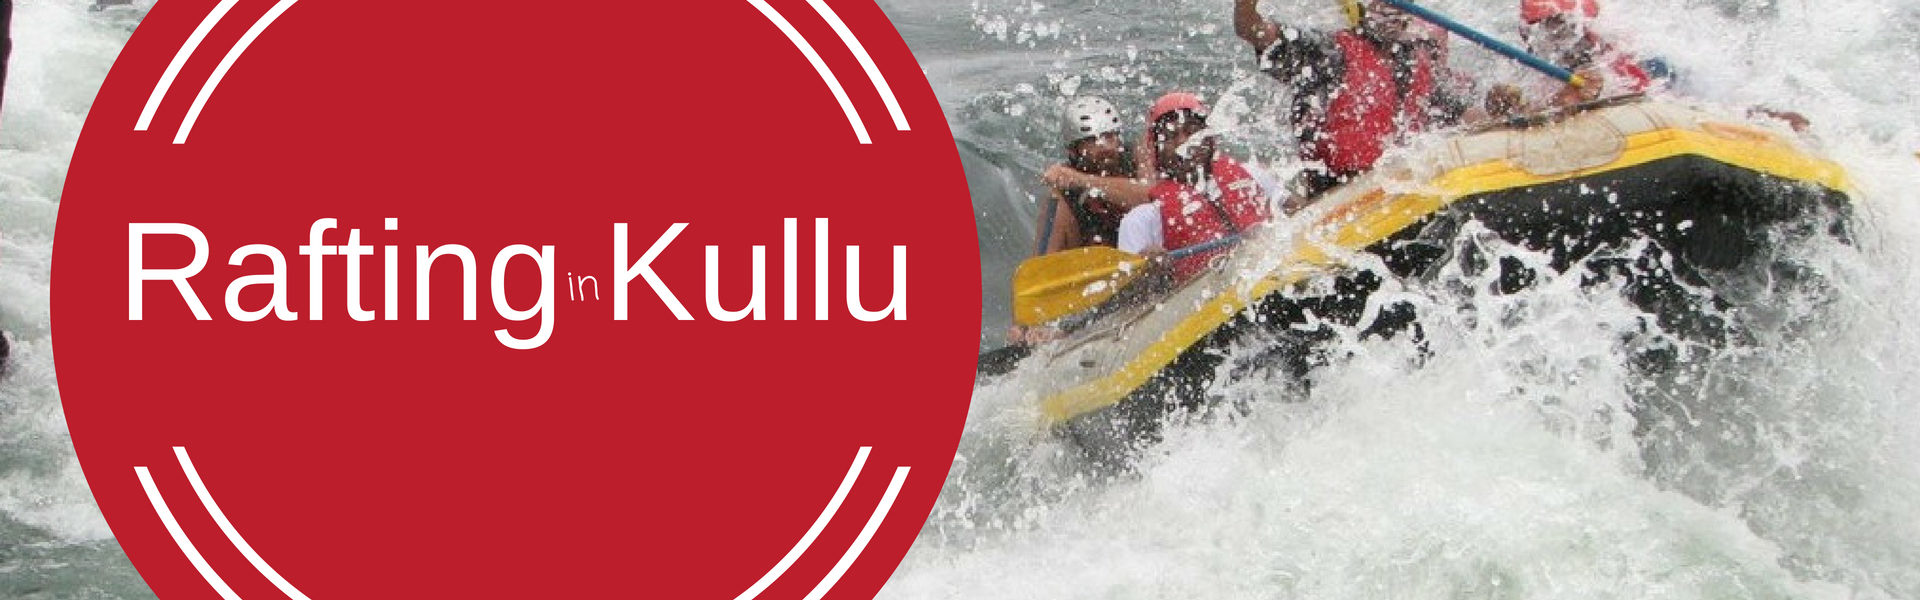 Rafting In Kullu